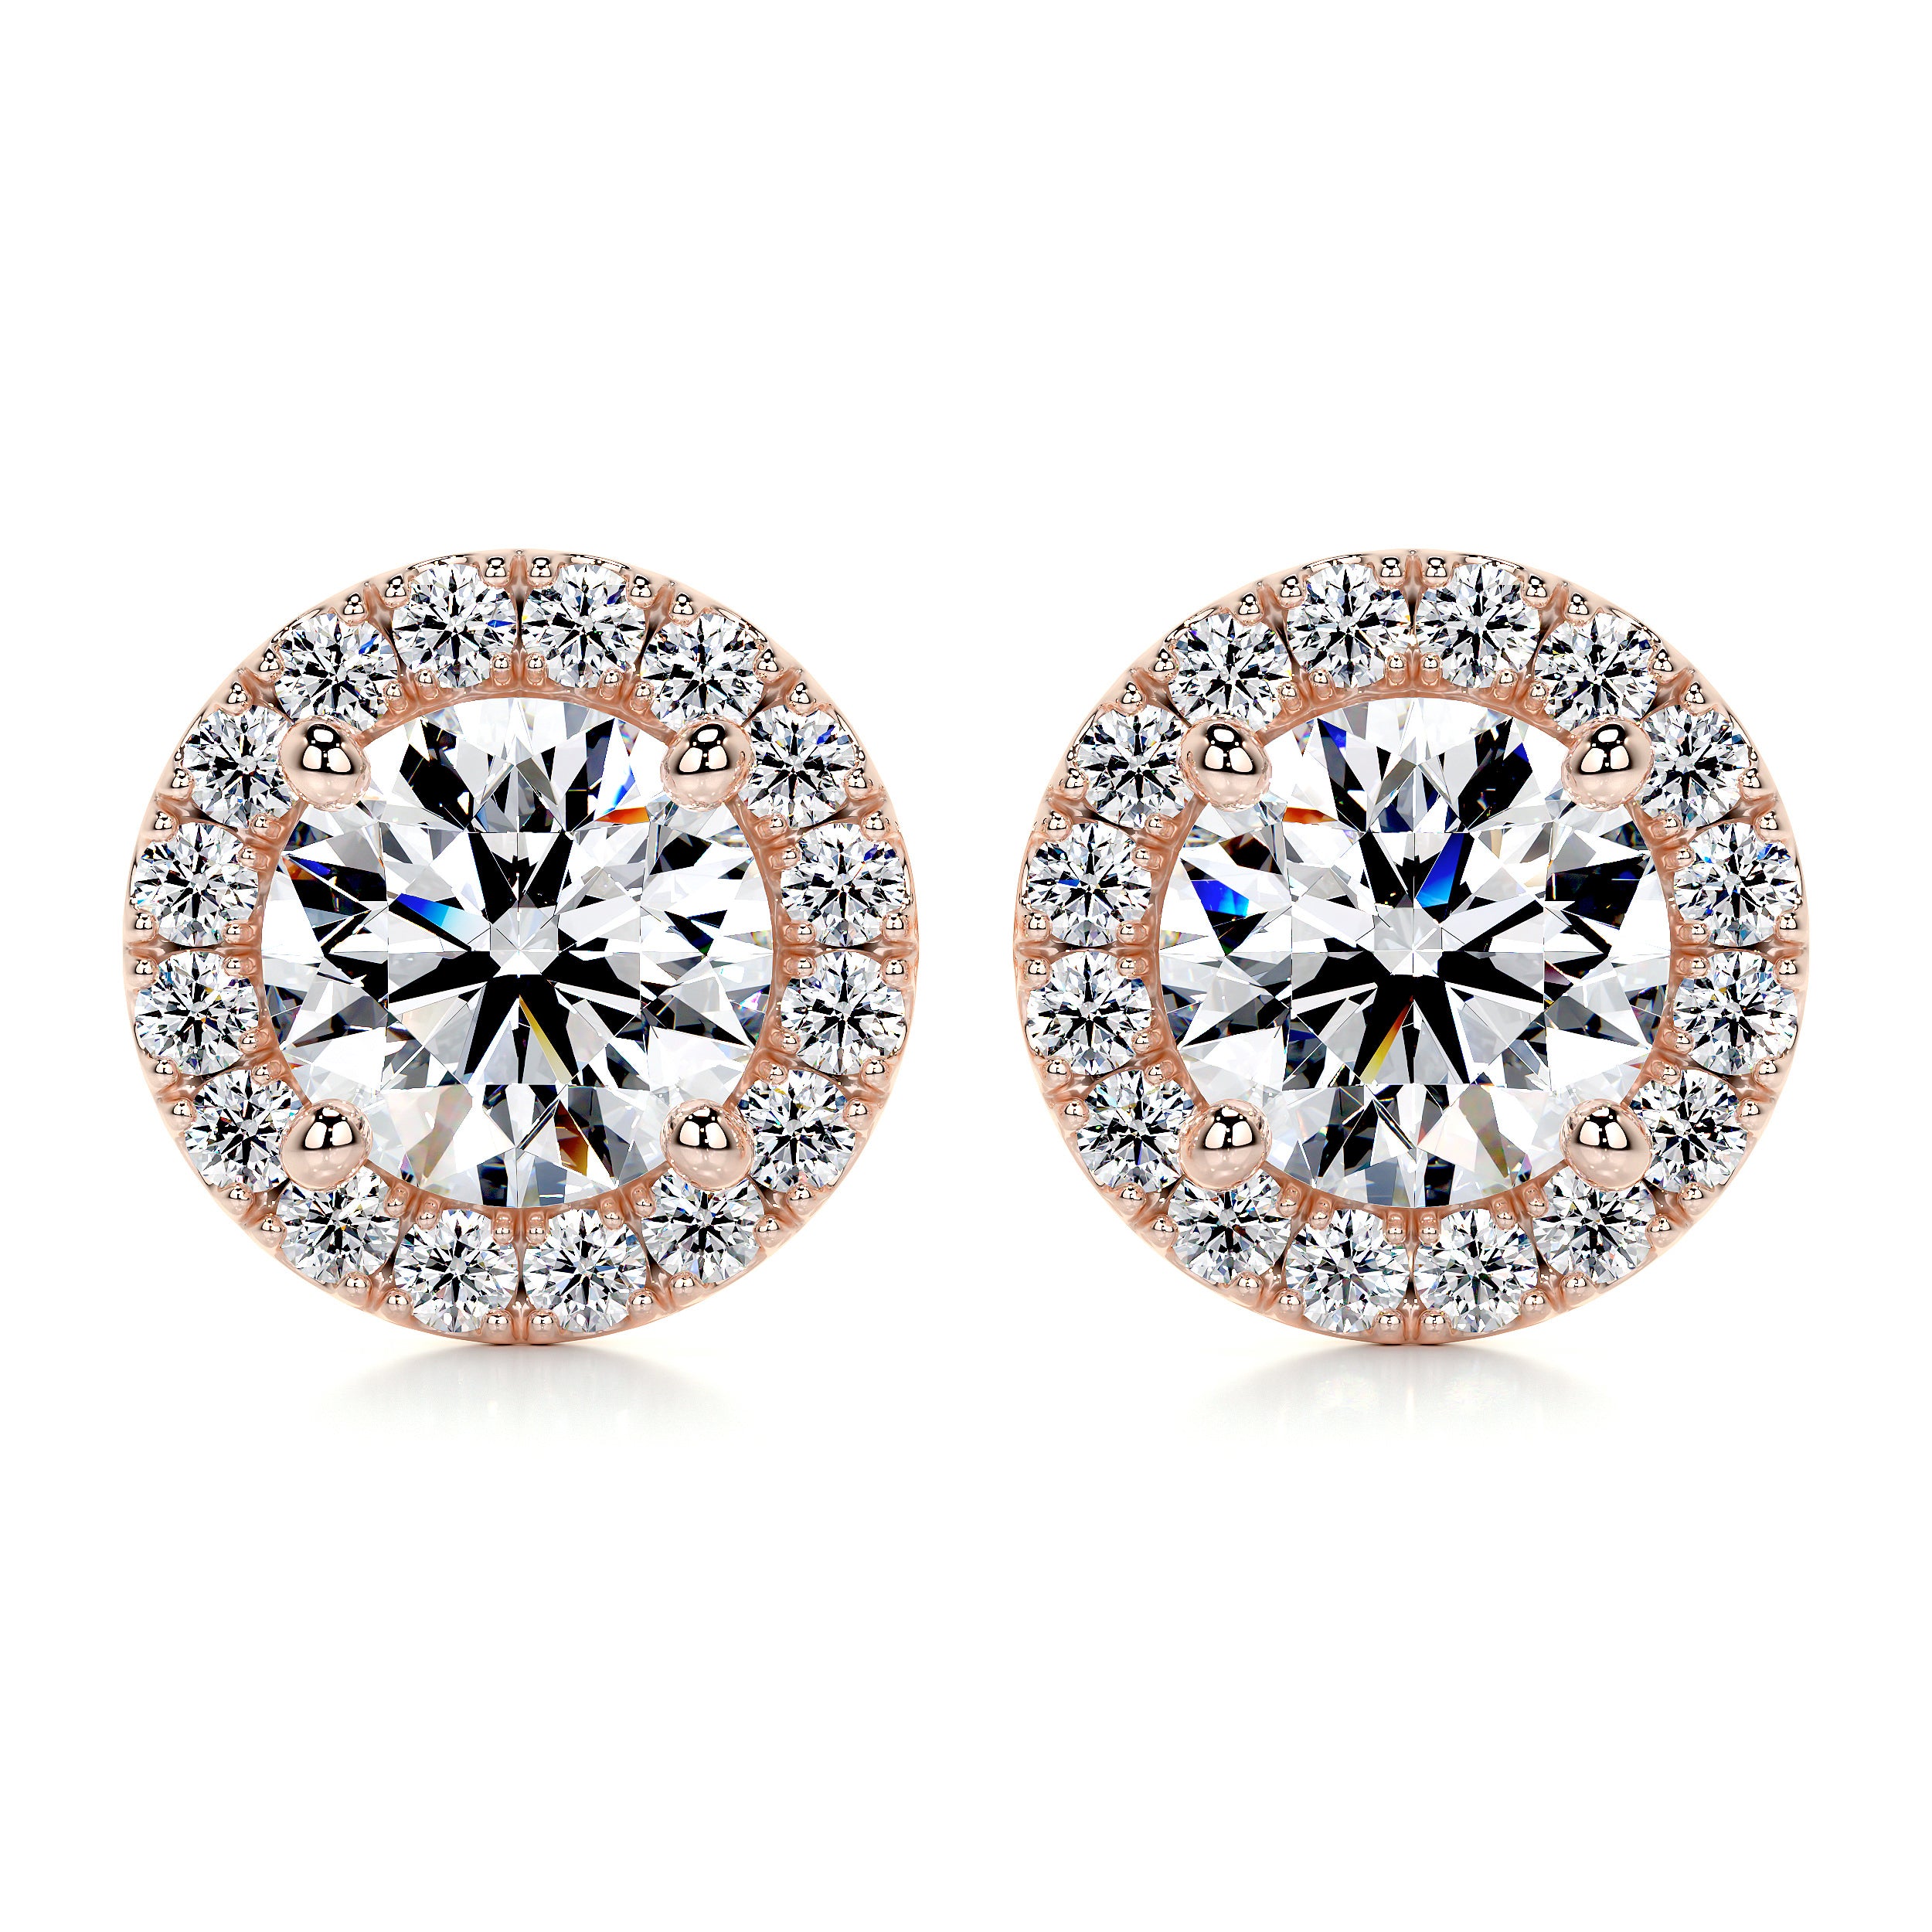 Erica Diamond Earrings -14K Rose Gold